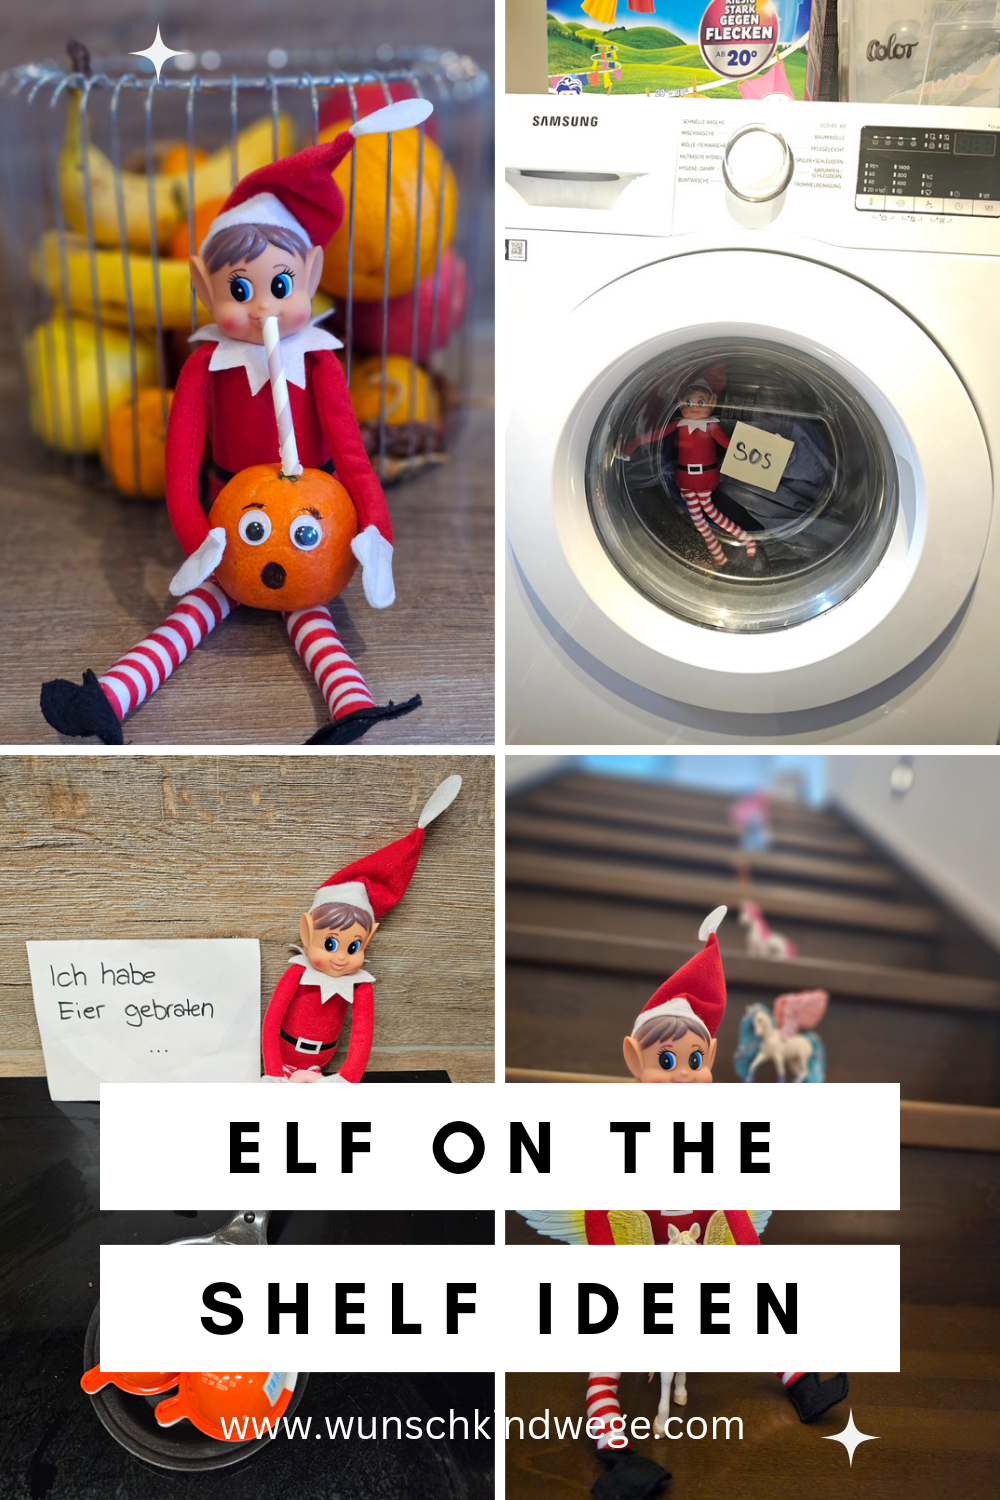 Elf on the Shelf Ideen Pinterest